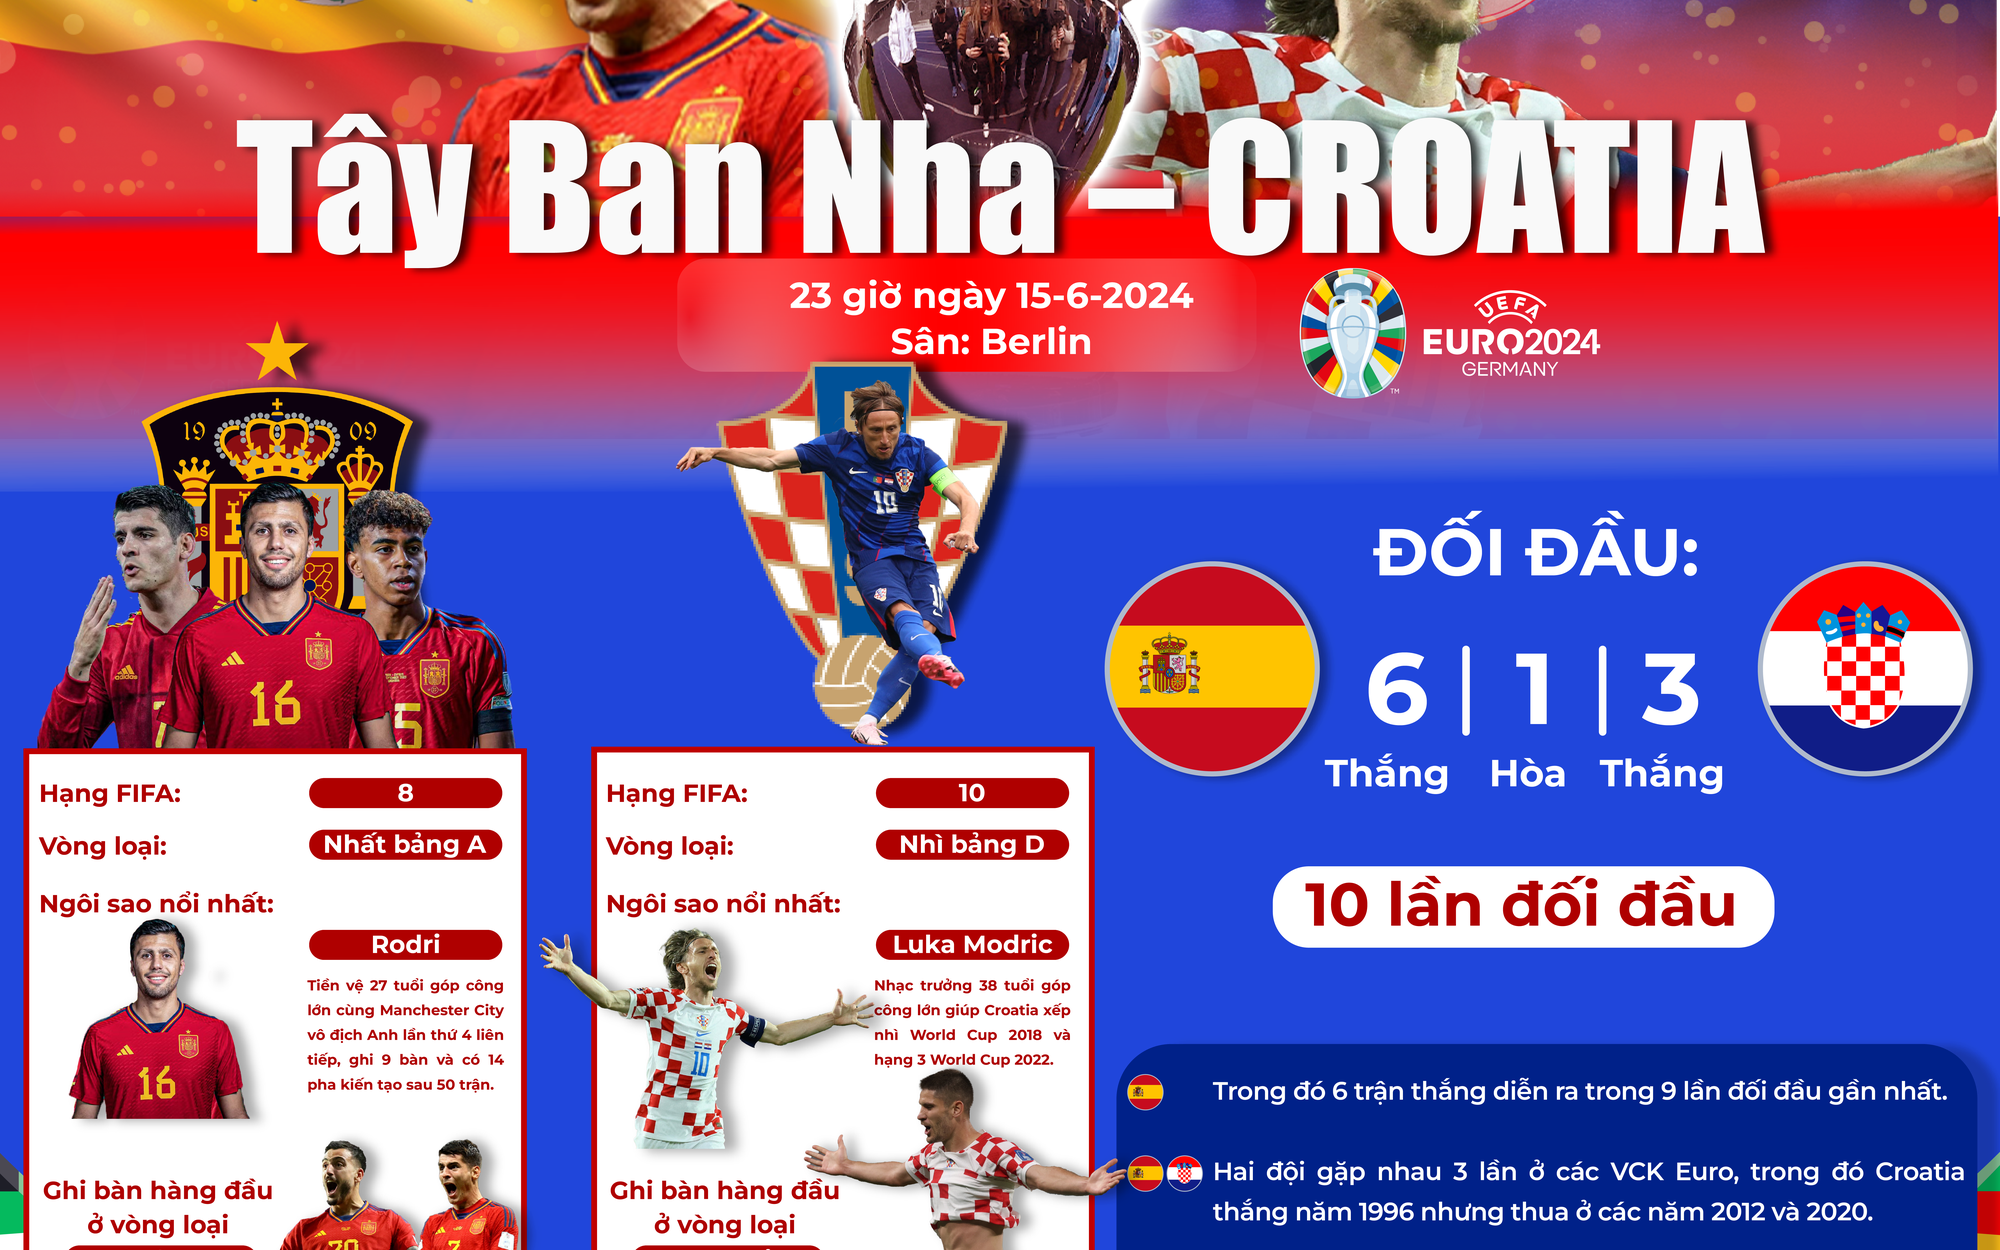 Tây Ban Nha - Croatia (23 giờ ngày 15-6): Chung kết sớm ở bảng 